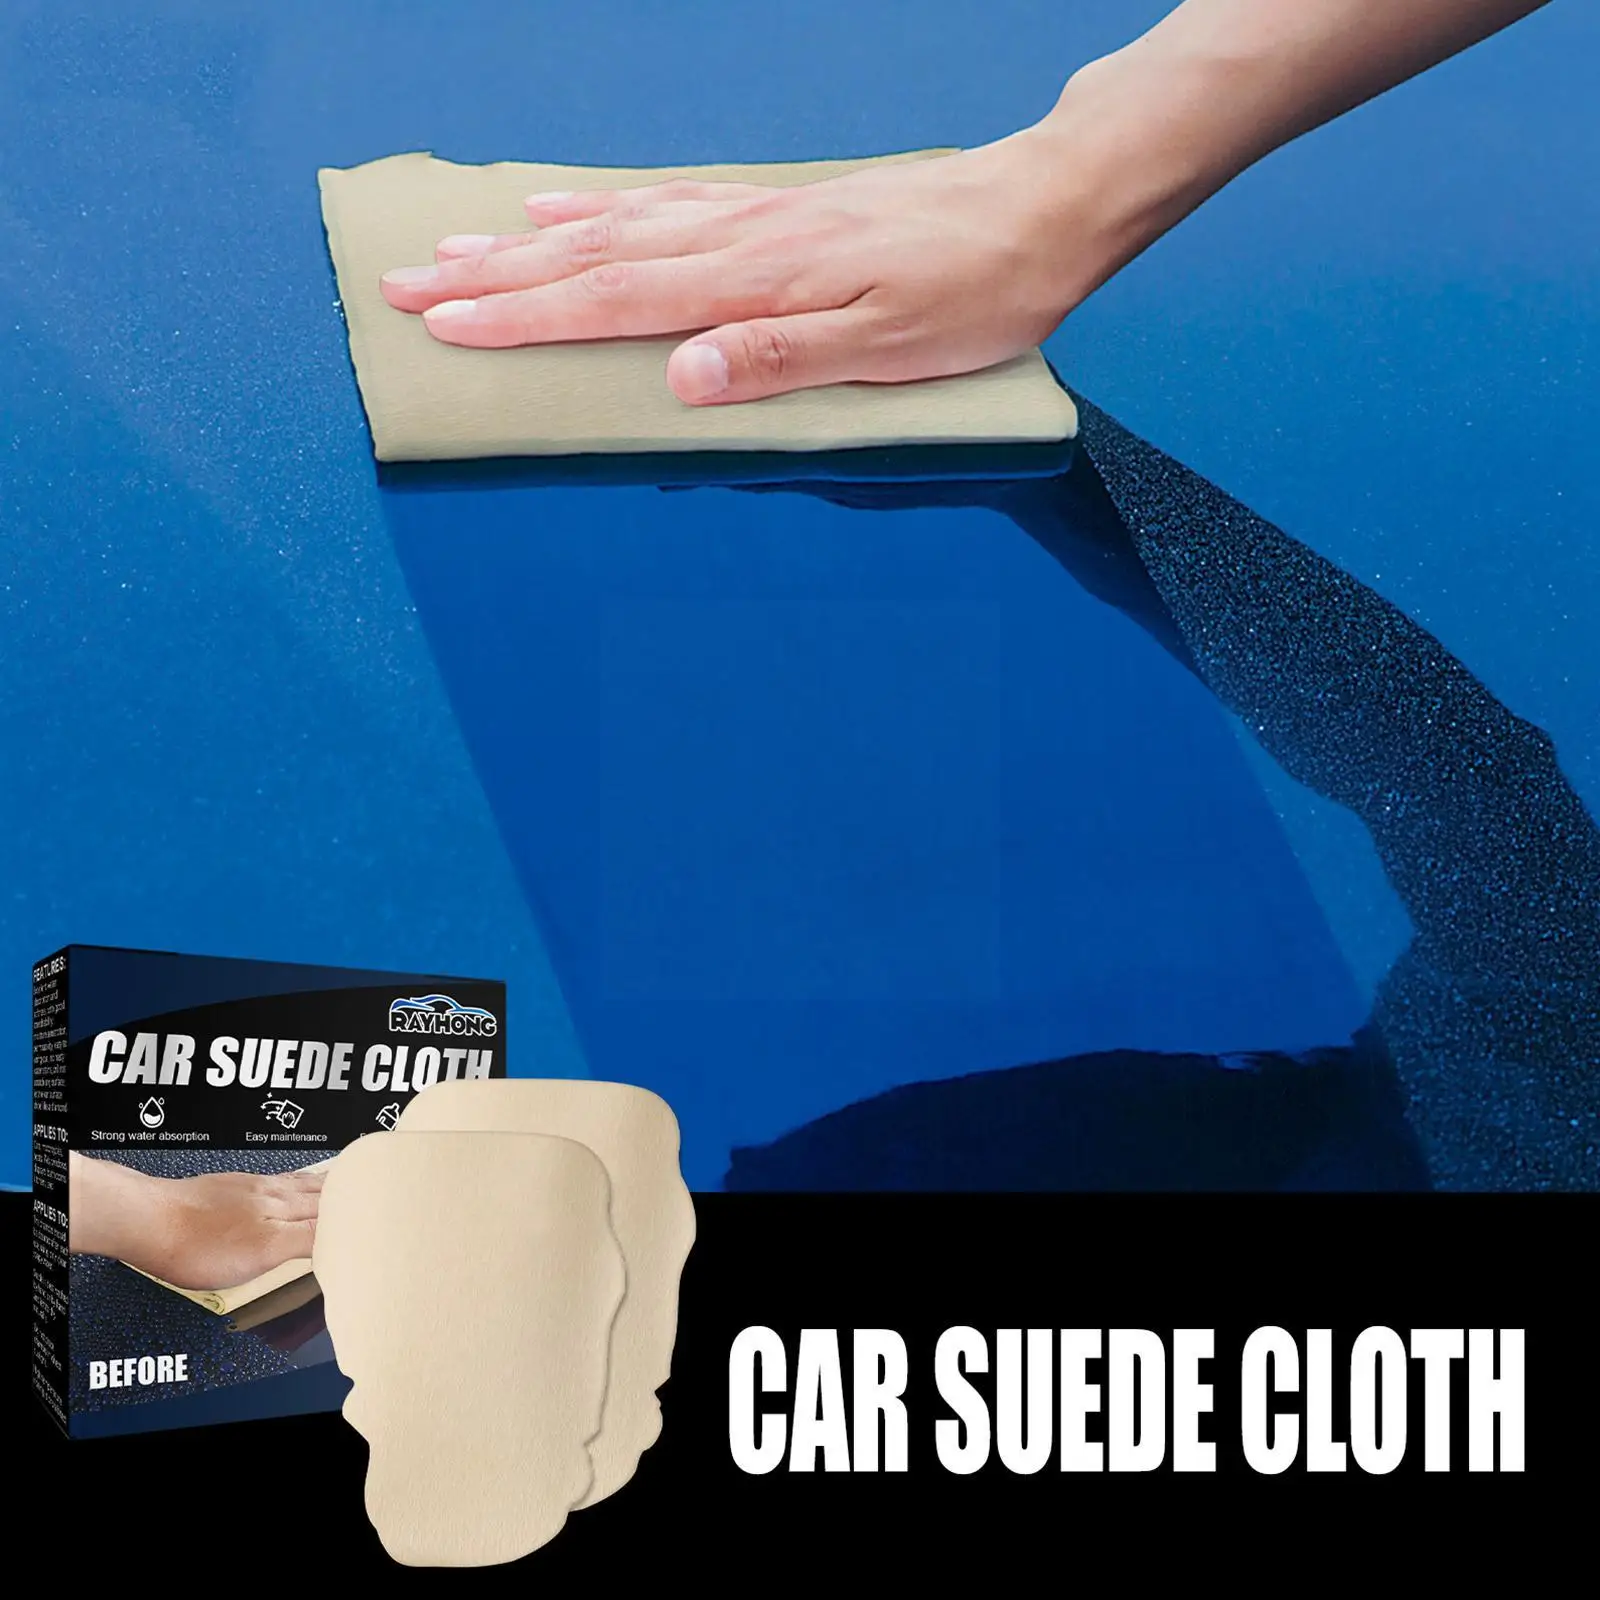 

Автомобильная замшевая ткань чистая ткань из натуральной кожи автомобильное полотенце для автомобиля уход сухая стирка впитывающий быстр...